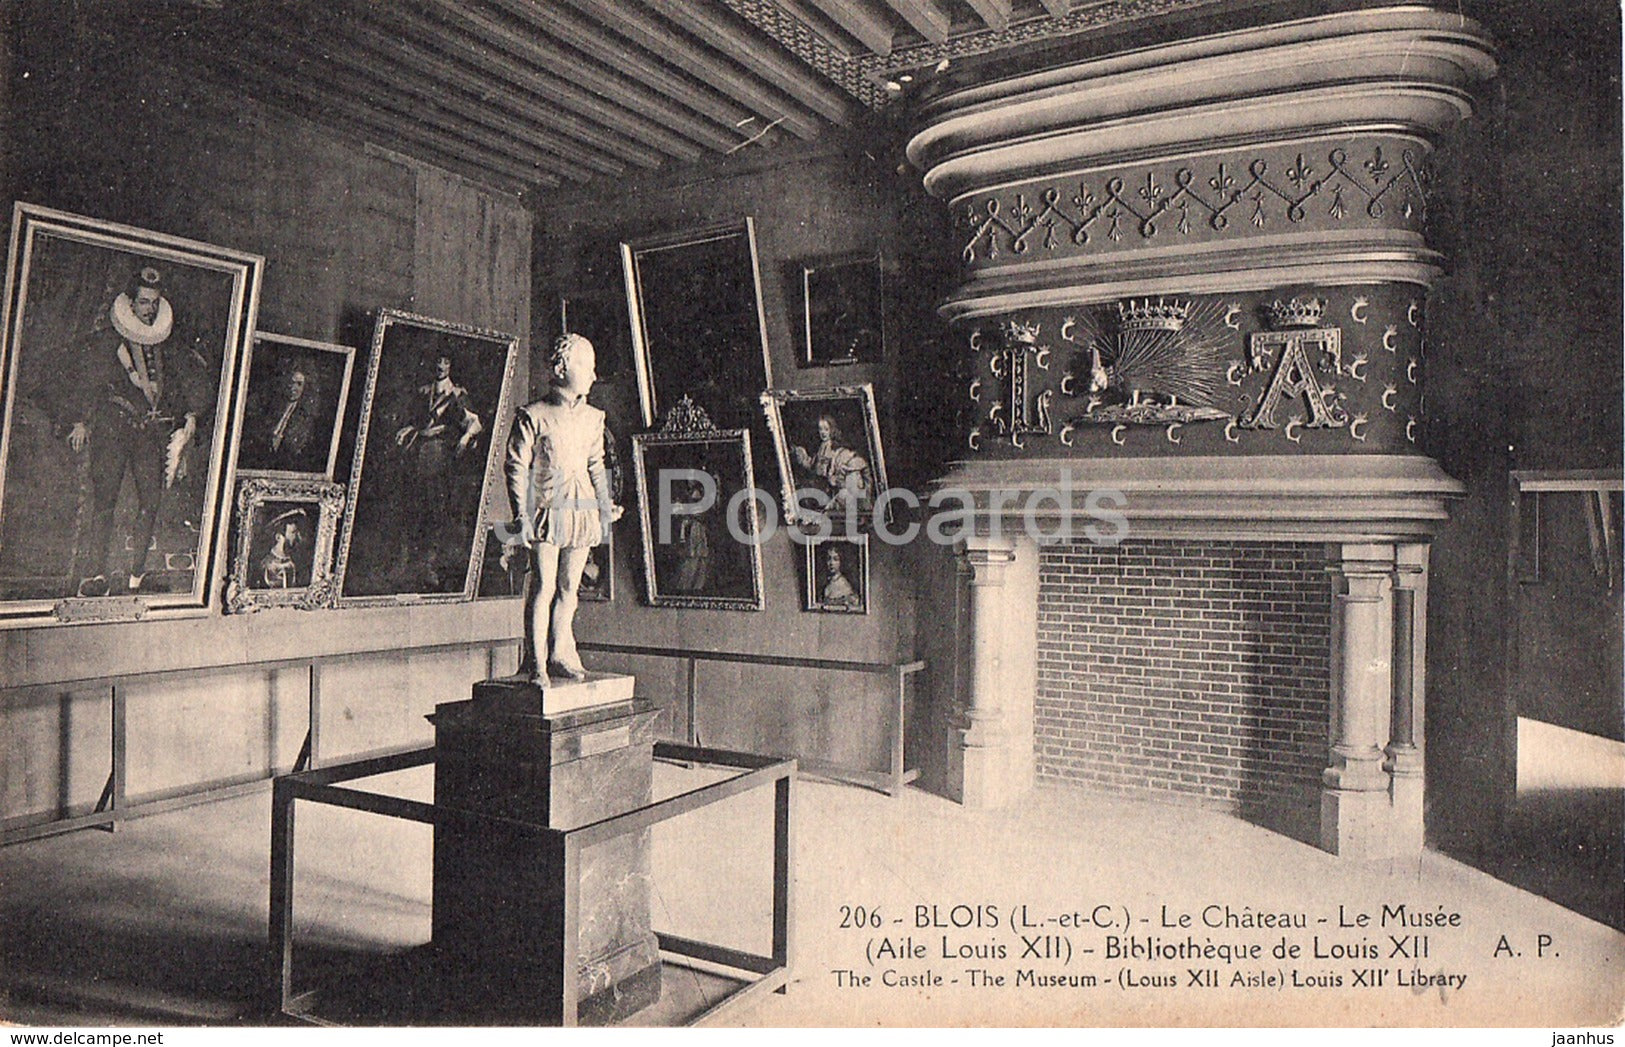 Blois - Le Chateau - Le Musee - Bibliotheque de Louis XII - castle - 206 - old postcard - France - unused